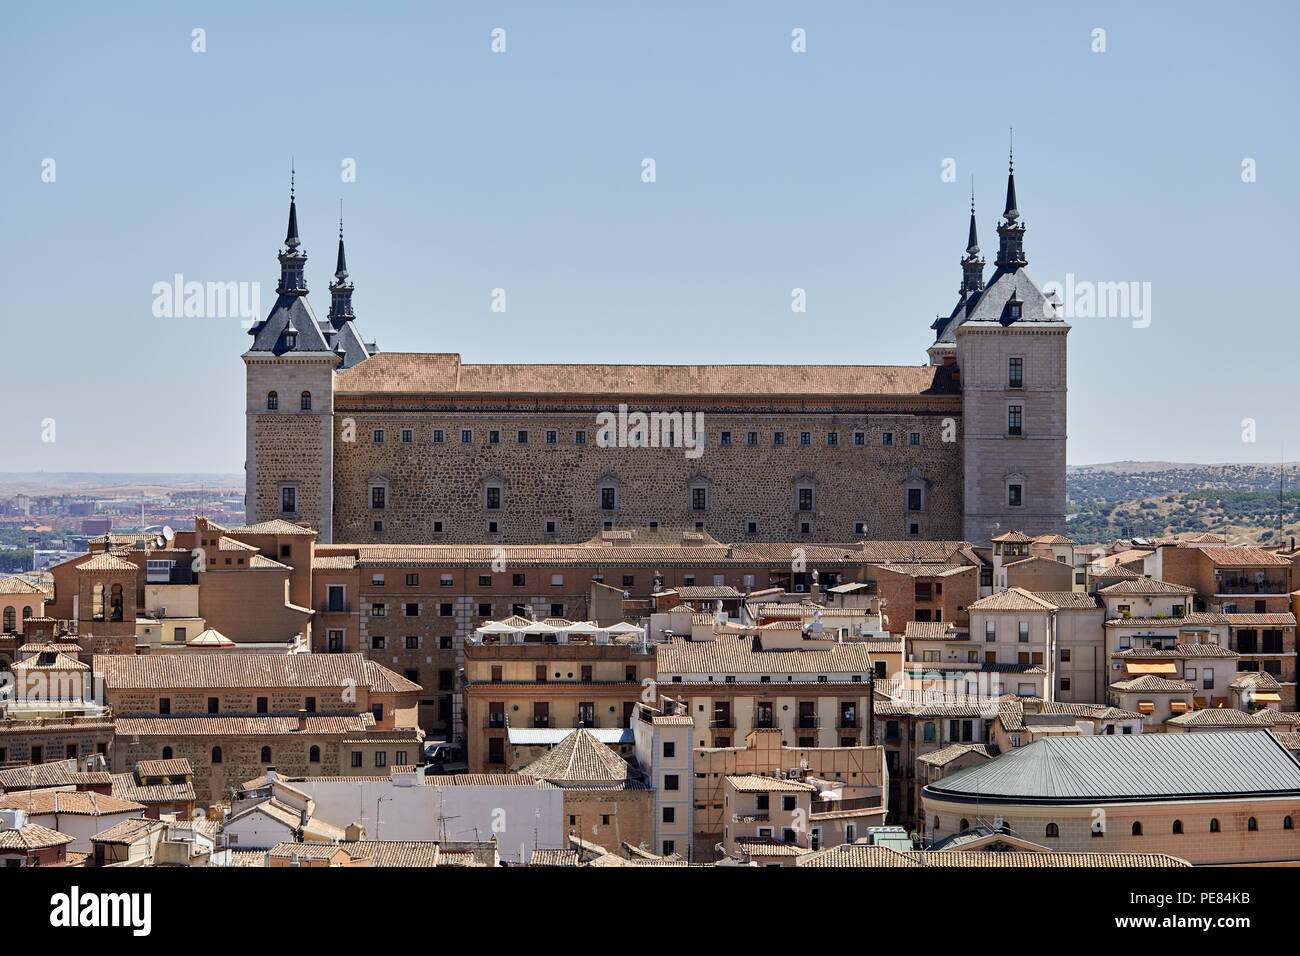 Tolède, Espagne : l'Alcazar, entourée de maisons et autres bâtiments, dans le centre historique de la ville espagnole de Tolède. Banque D'Images